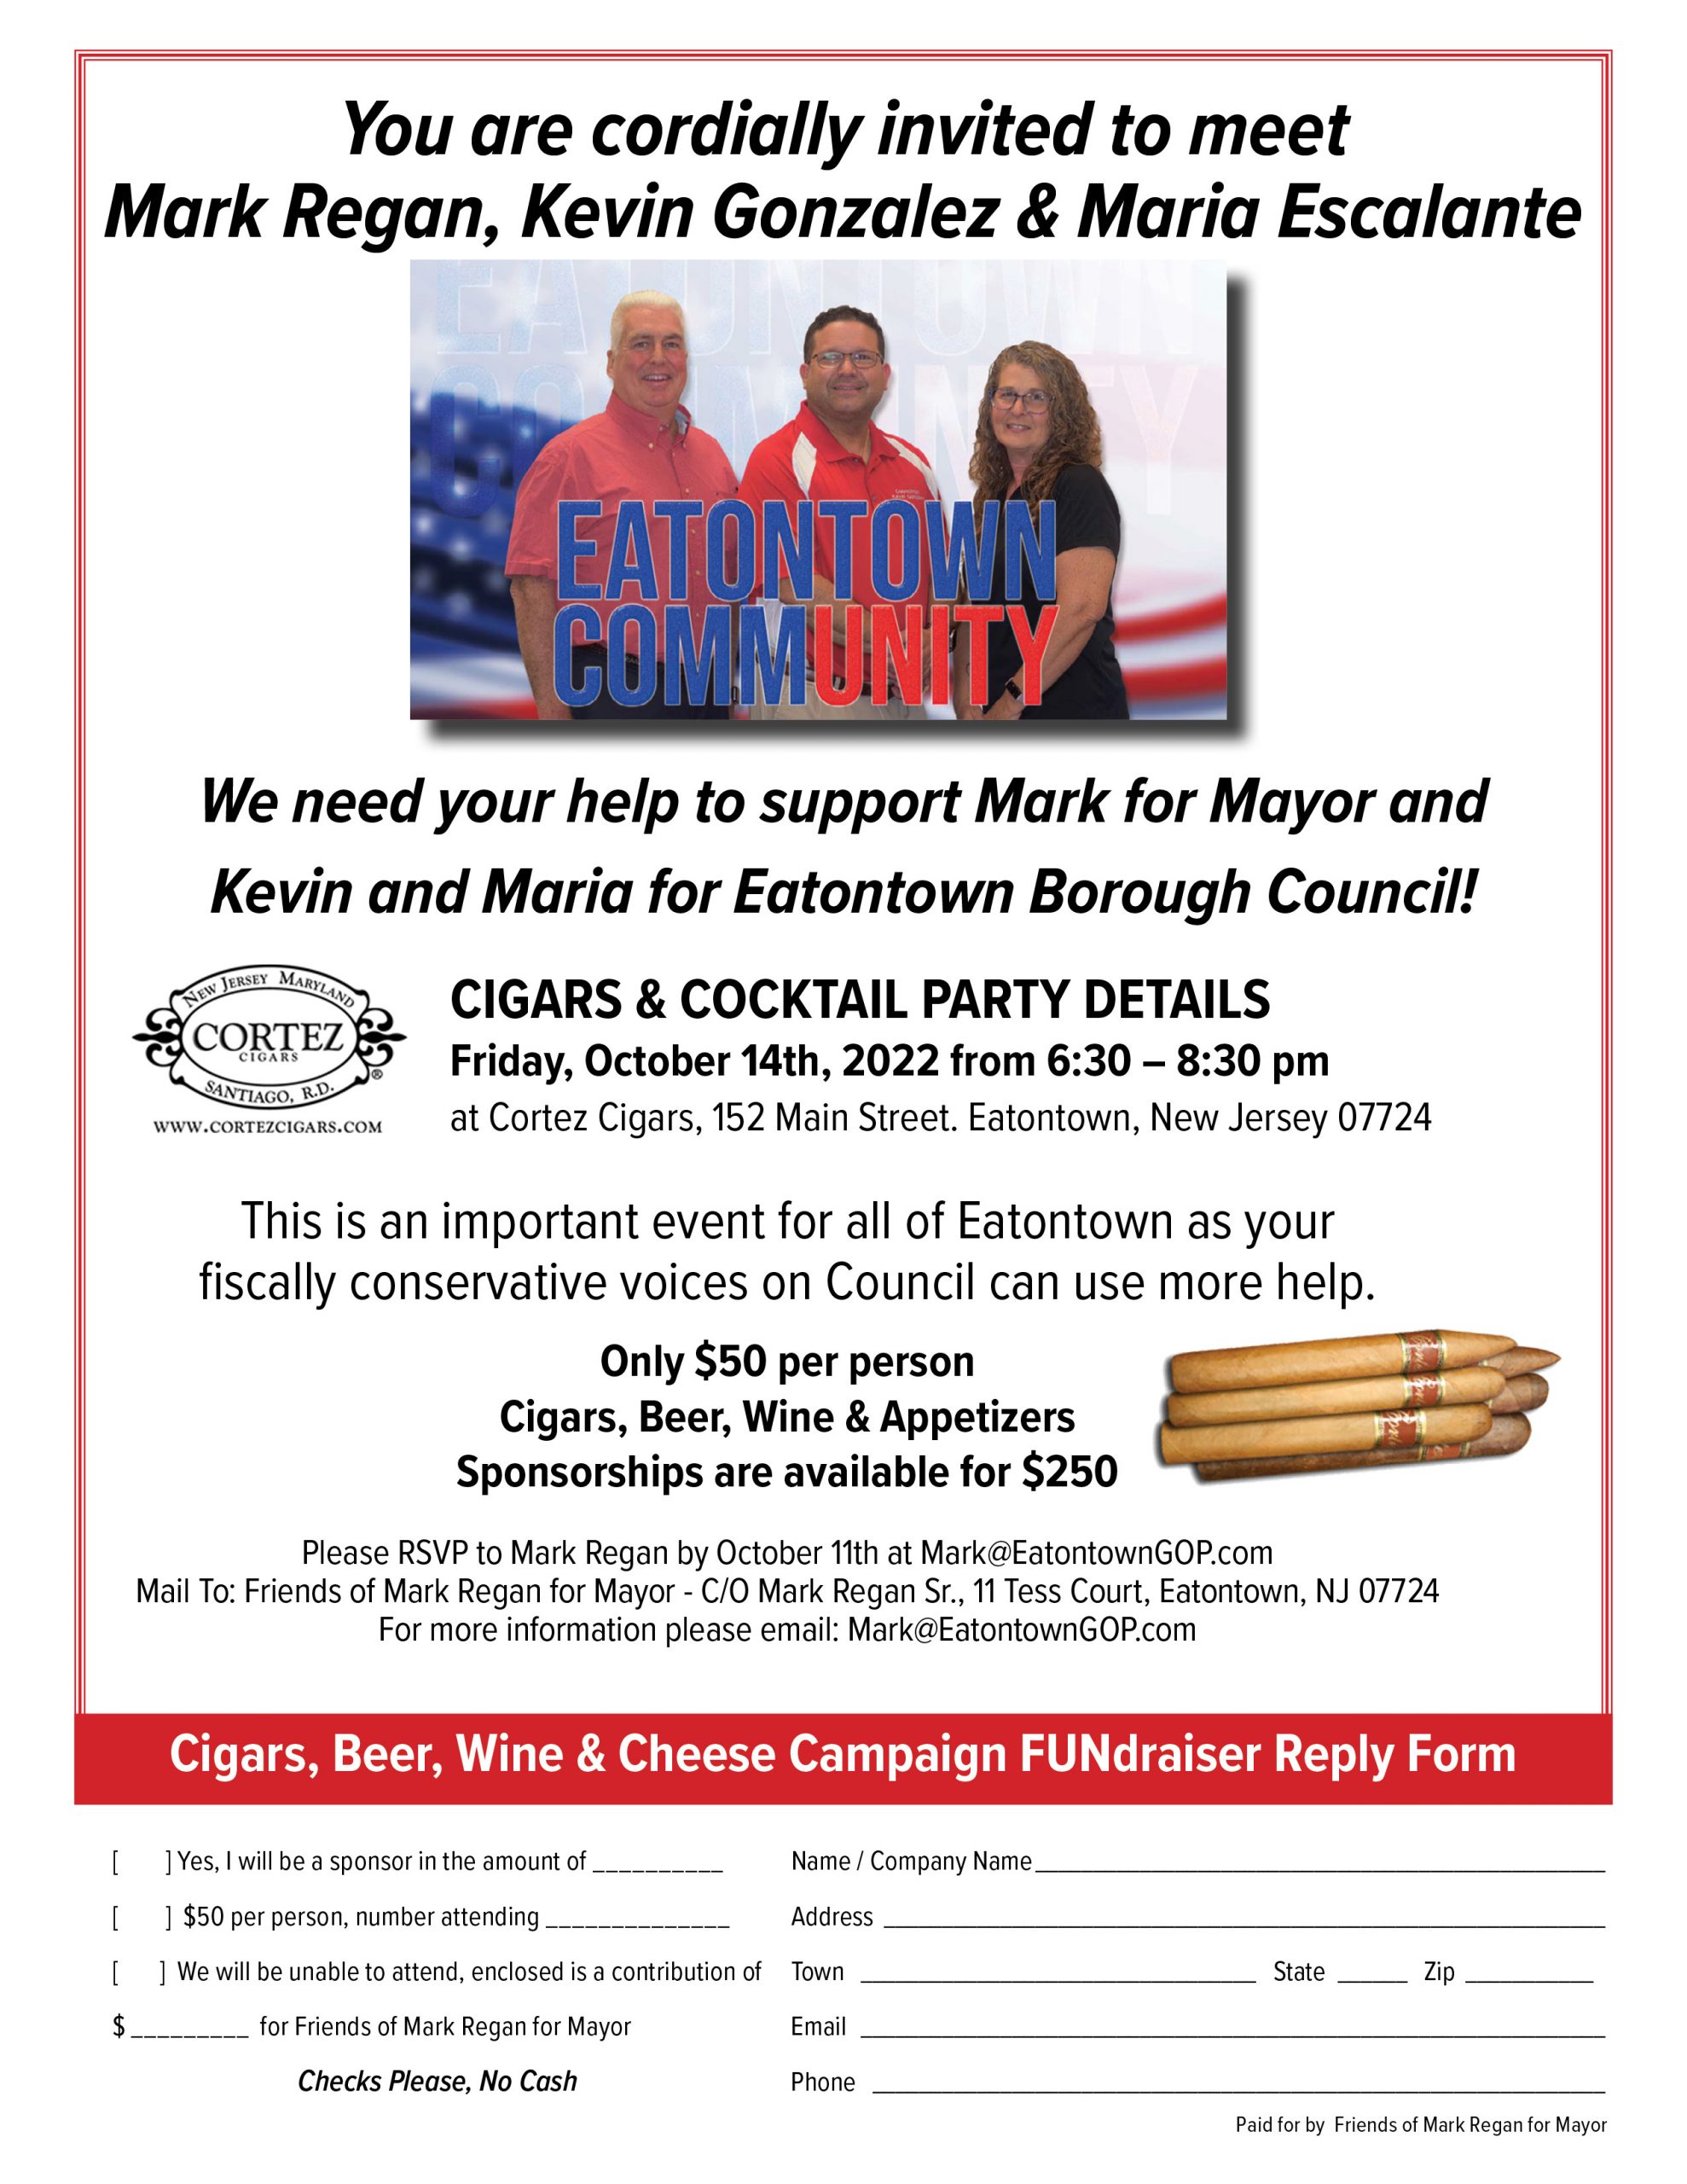 Regan for Mayor Cigar Fundraiser